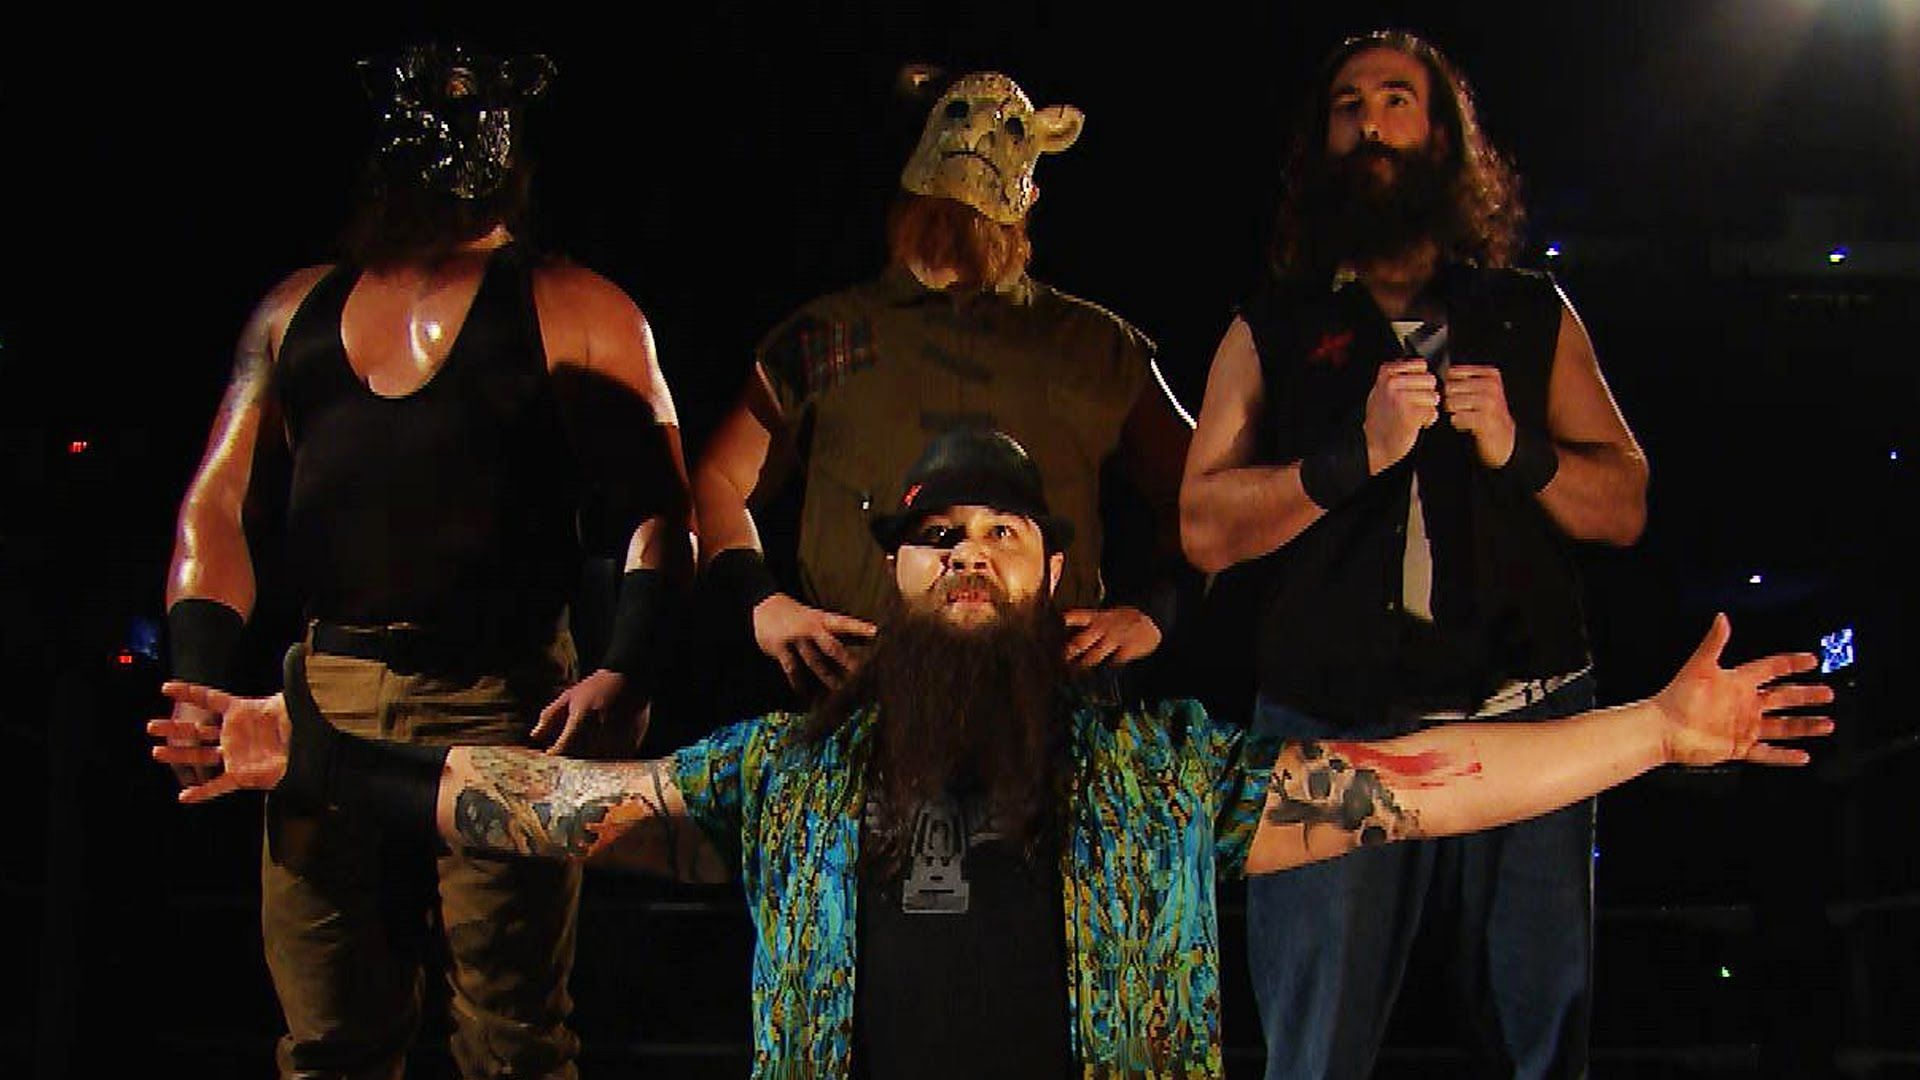 Luke Harper was a part of The Wyatt Family in WWE 